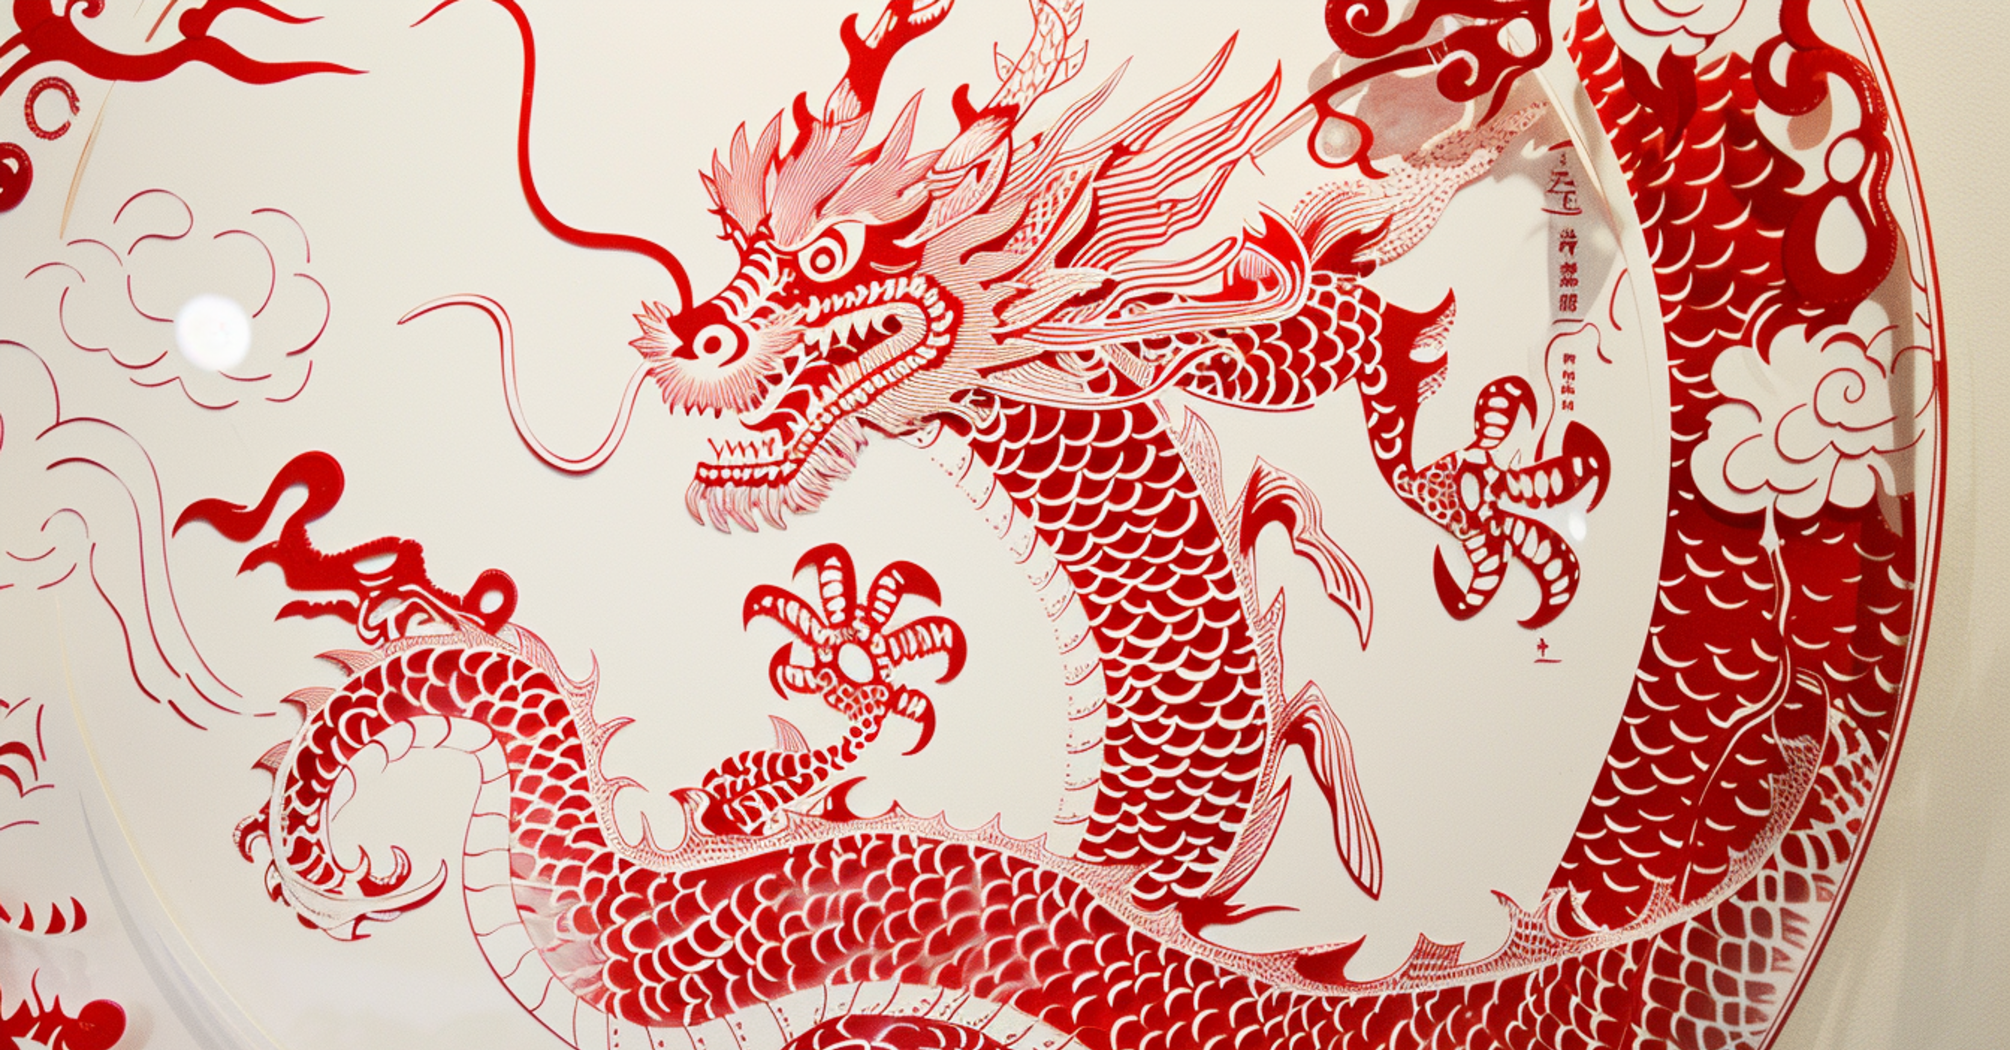 Будьте осторожны с финансами: китайский гороскоп на 6 марта